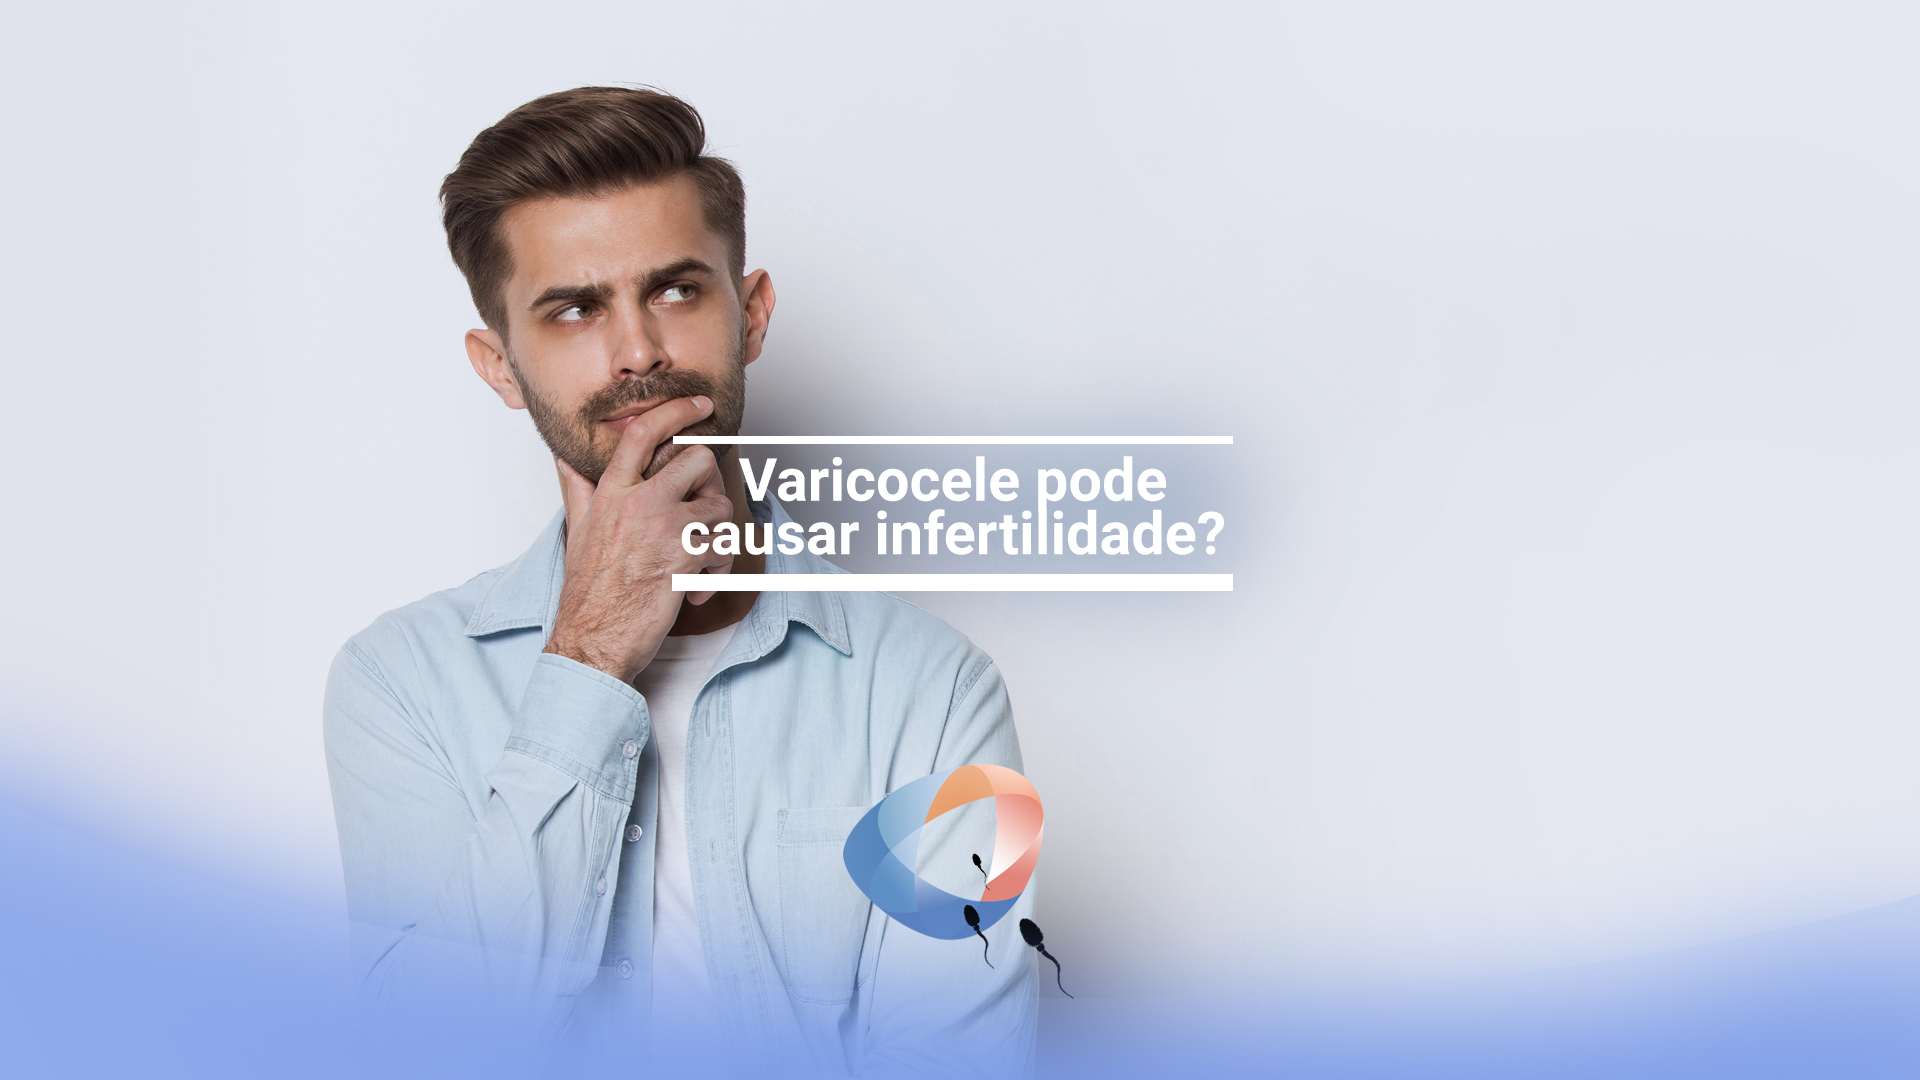 Varicocele pode causar infertilidade?